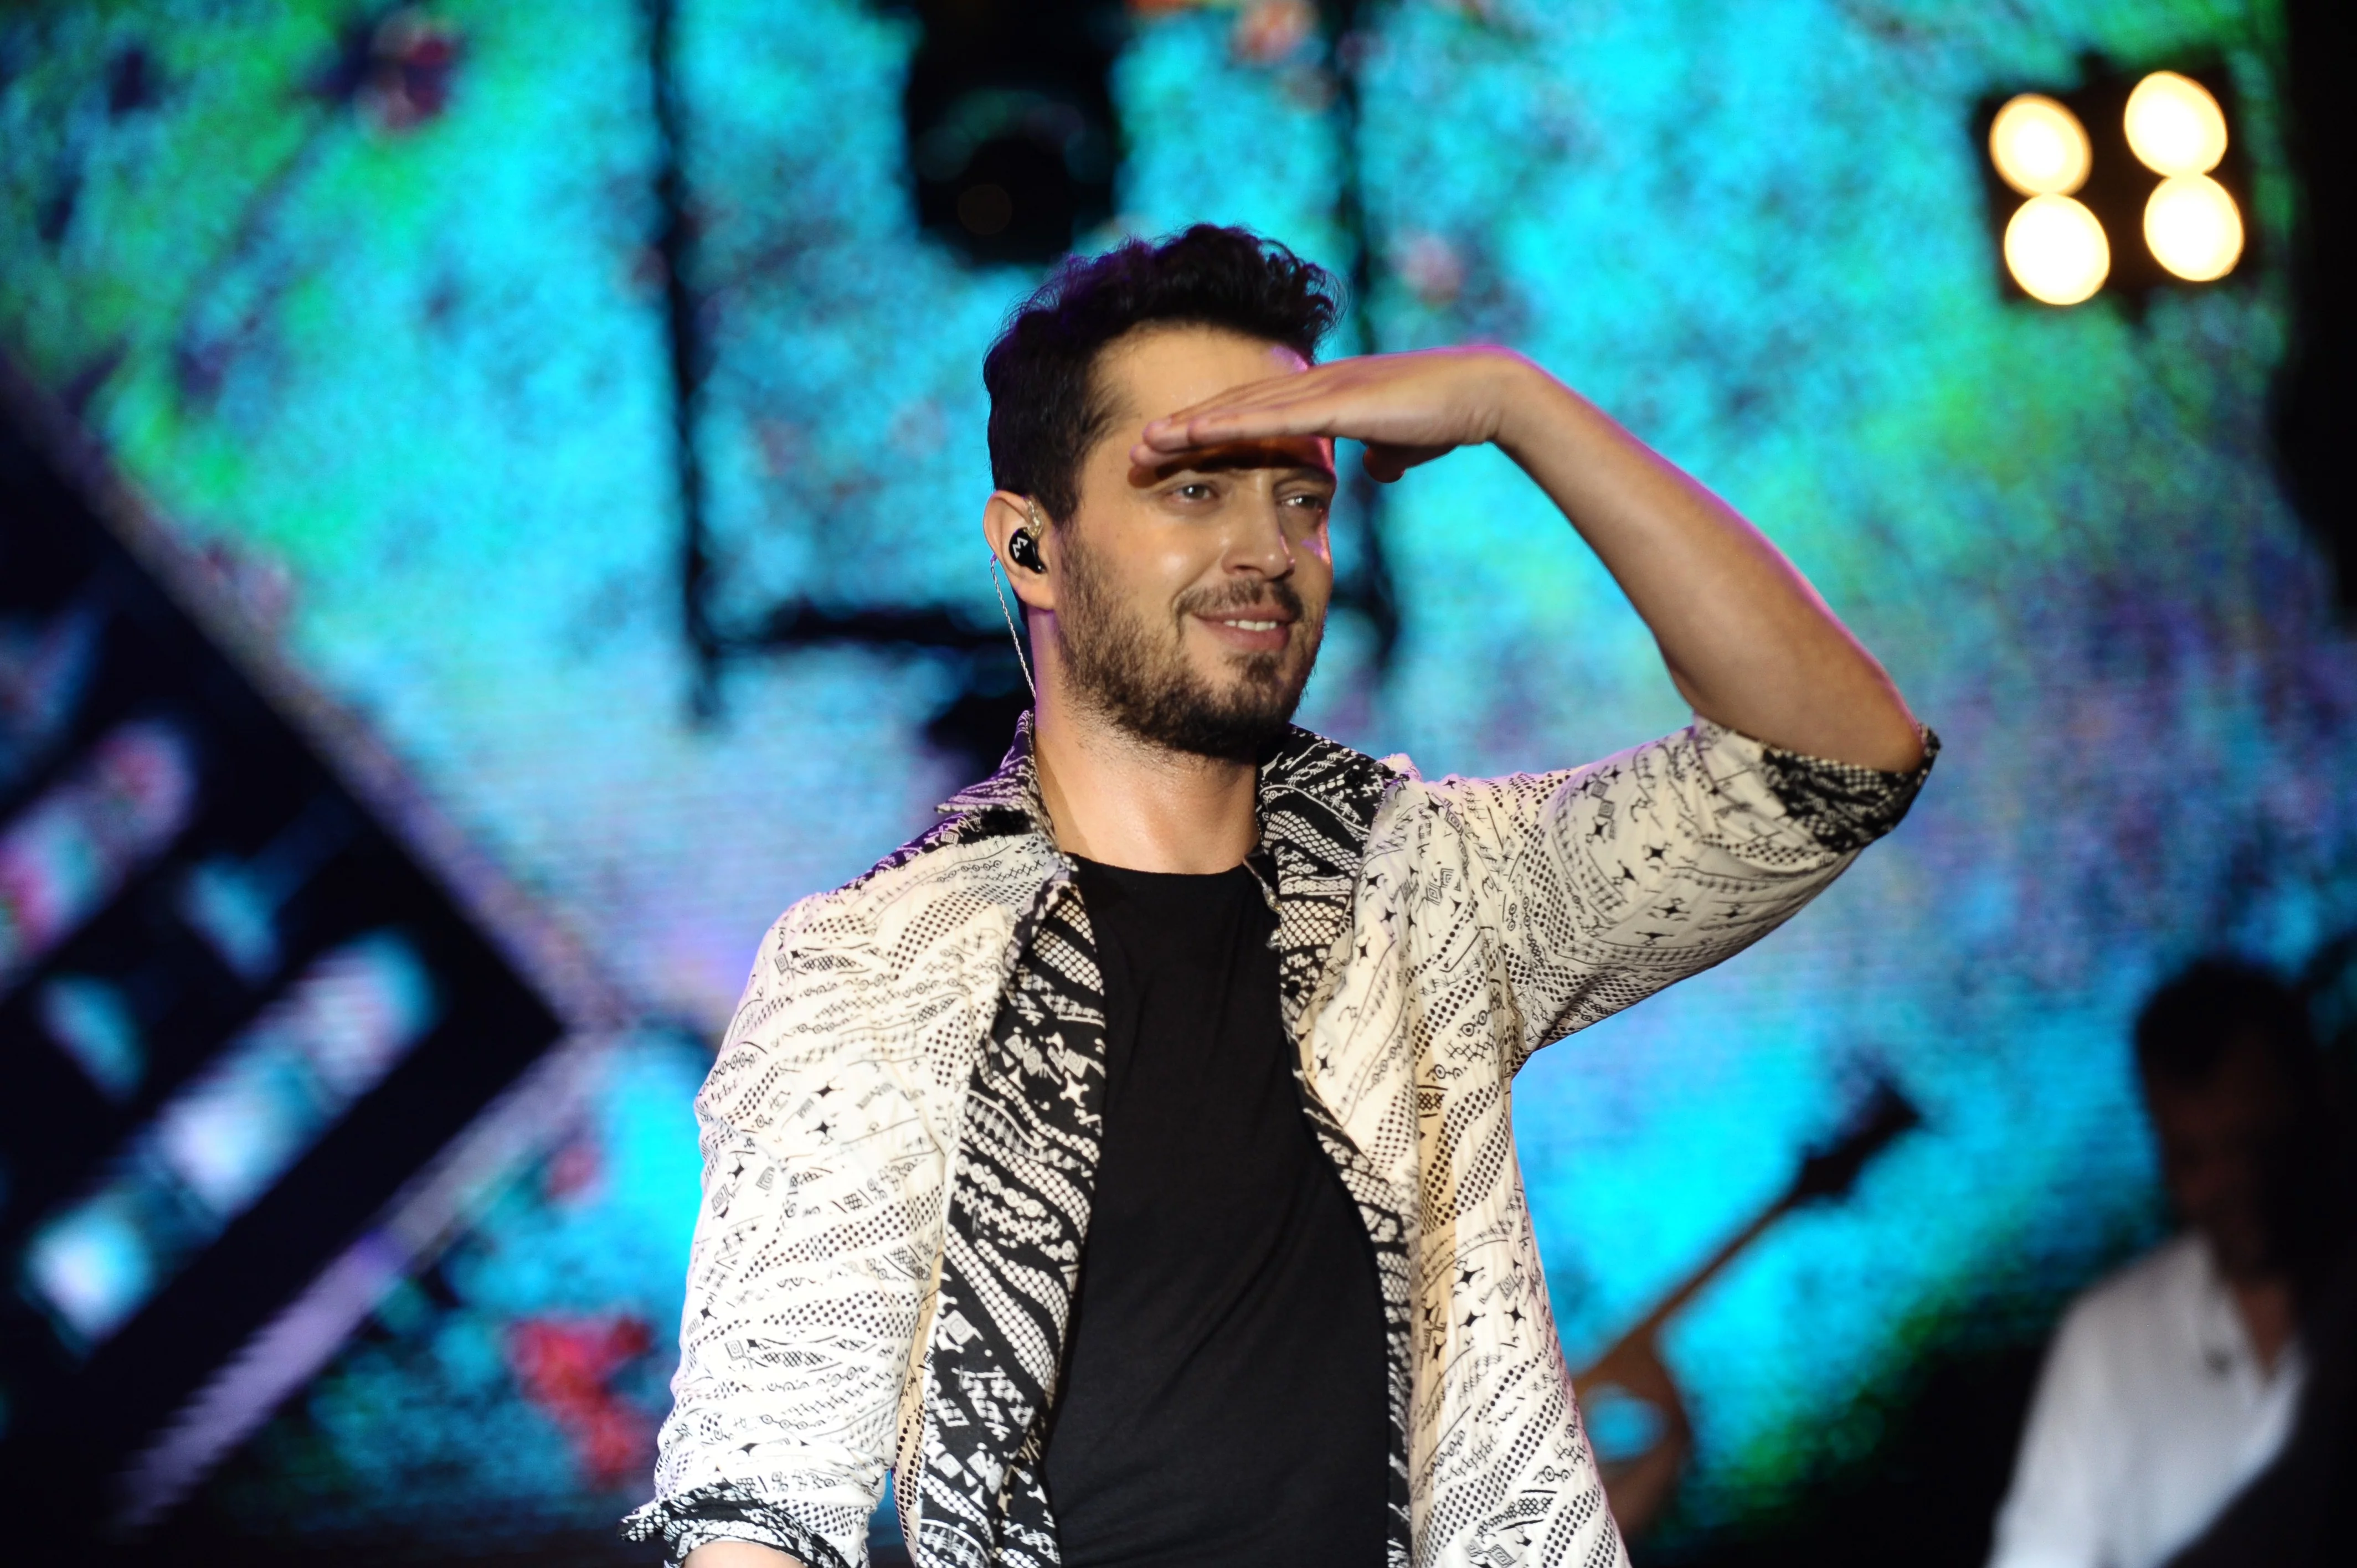 Ünlü şarkıcı Murat Boz, Bursalı hayranlarını coşturdu